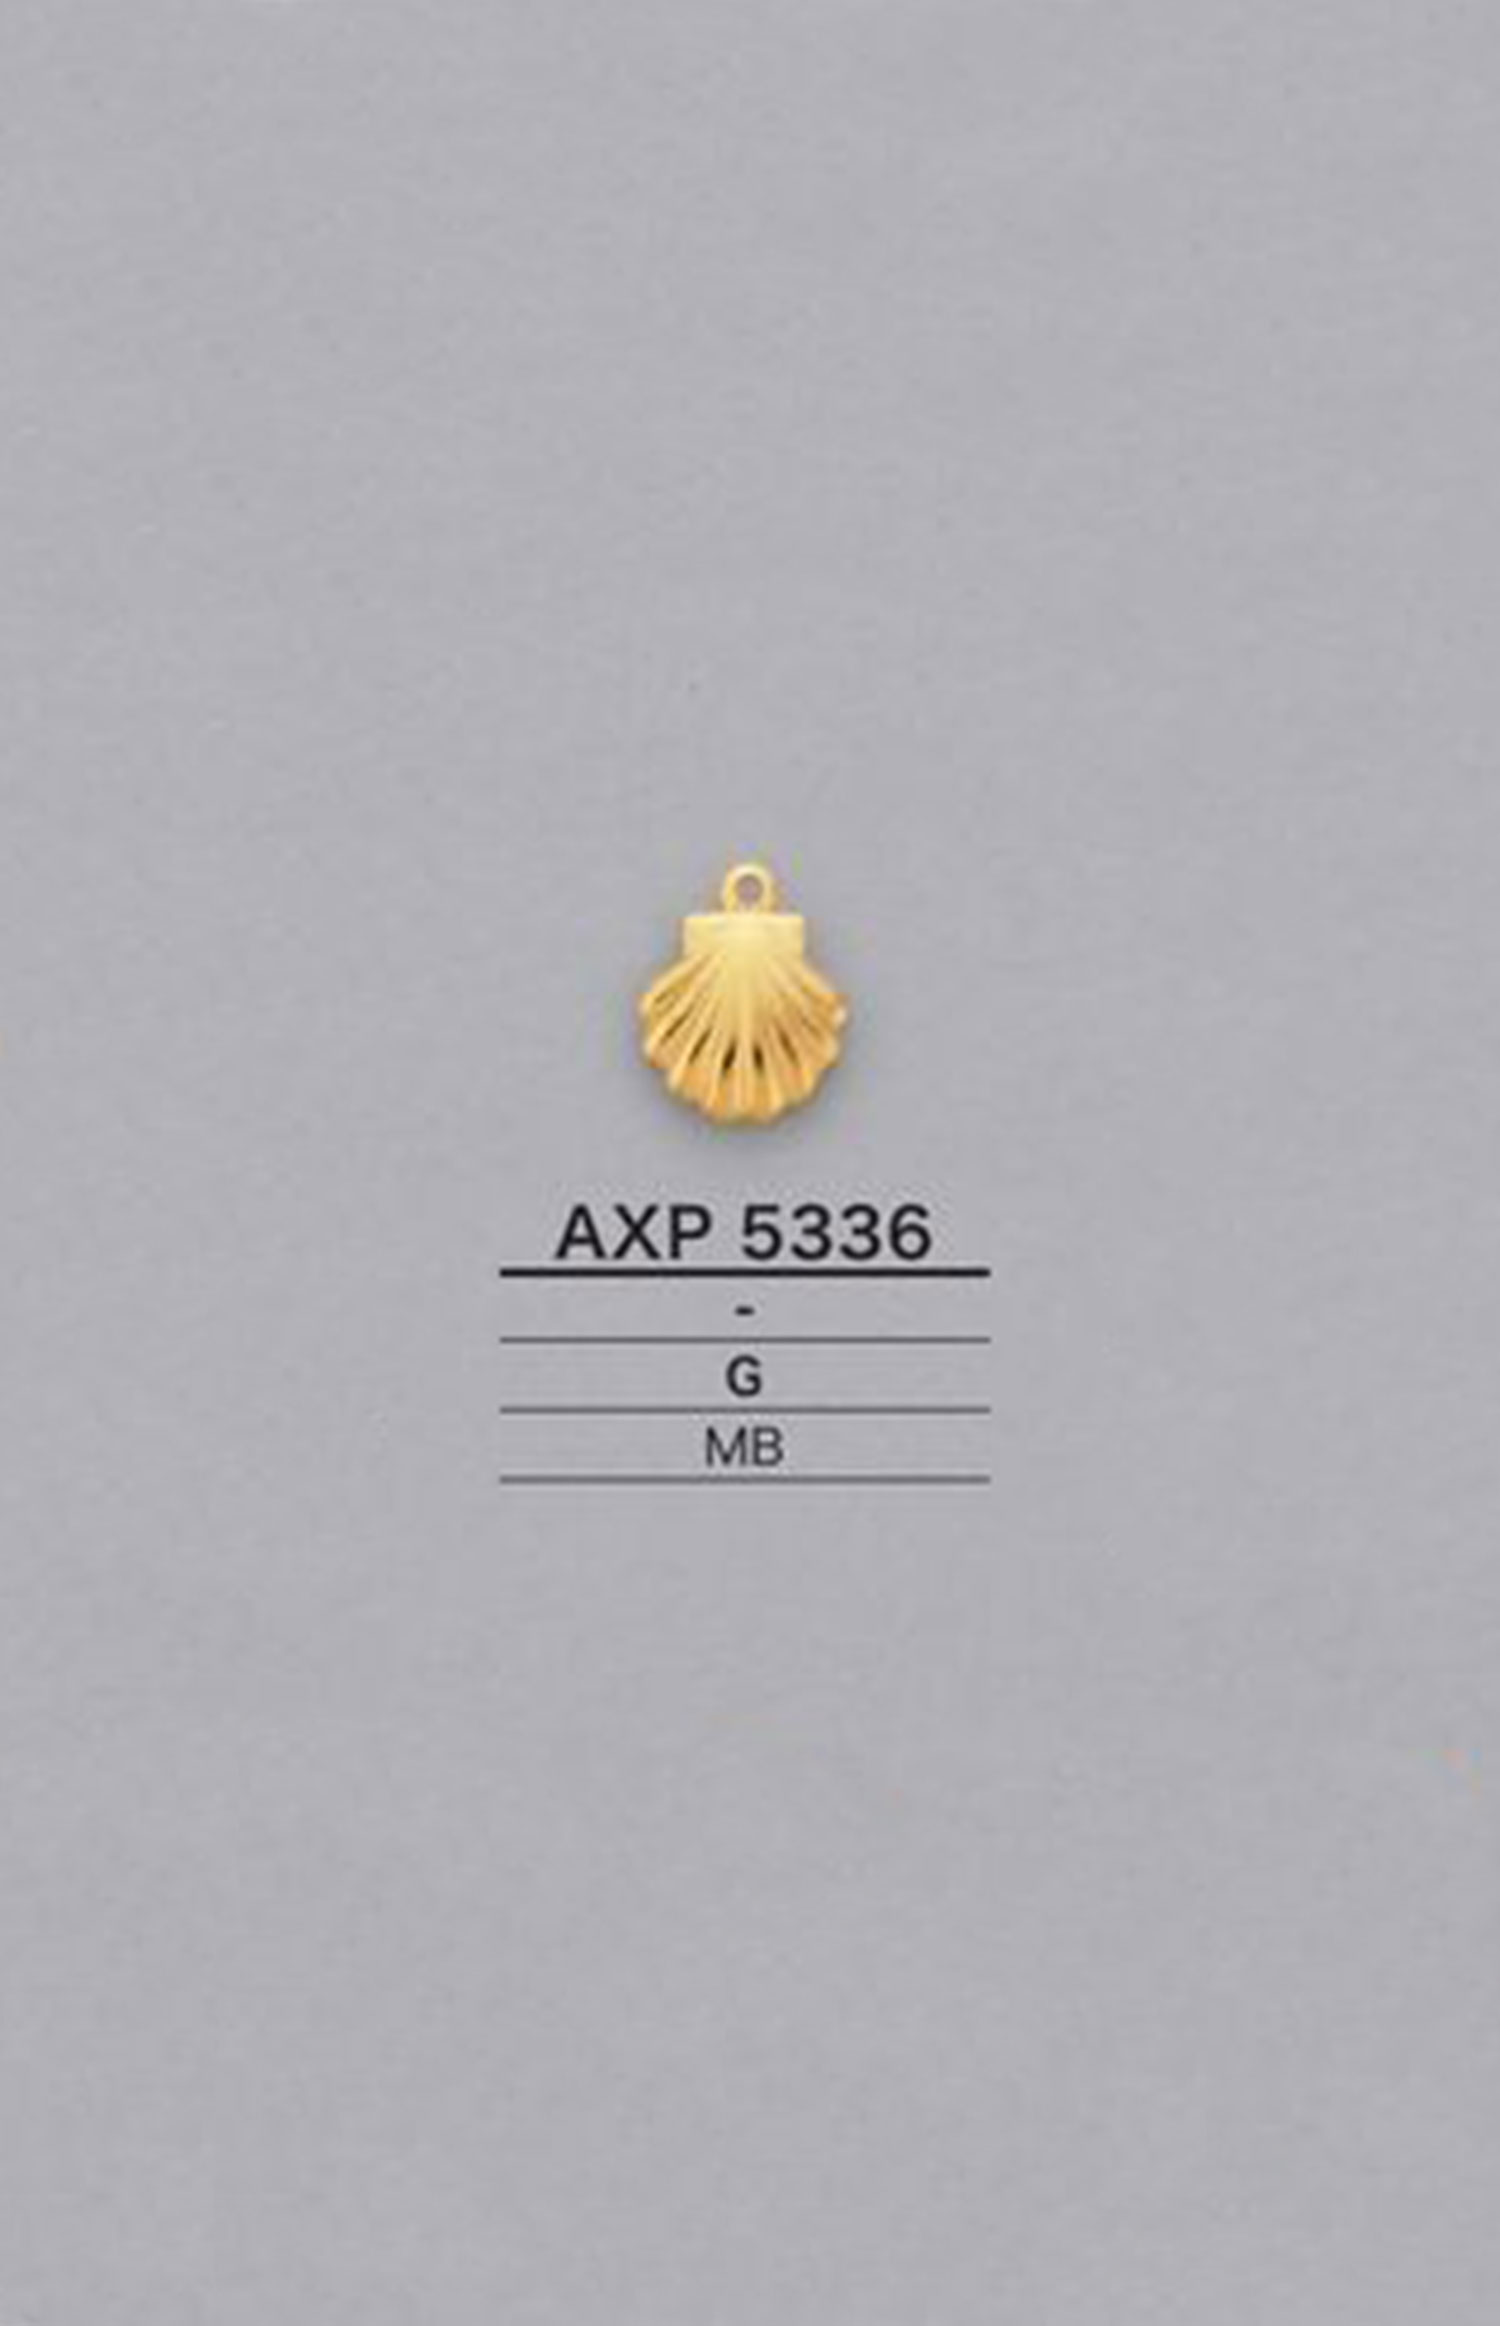 AXP5336 Parti Di Motivi A Forma Di Conchiglia[Merci Varie E Altri] IRIS